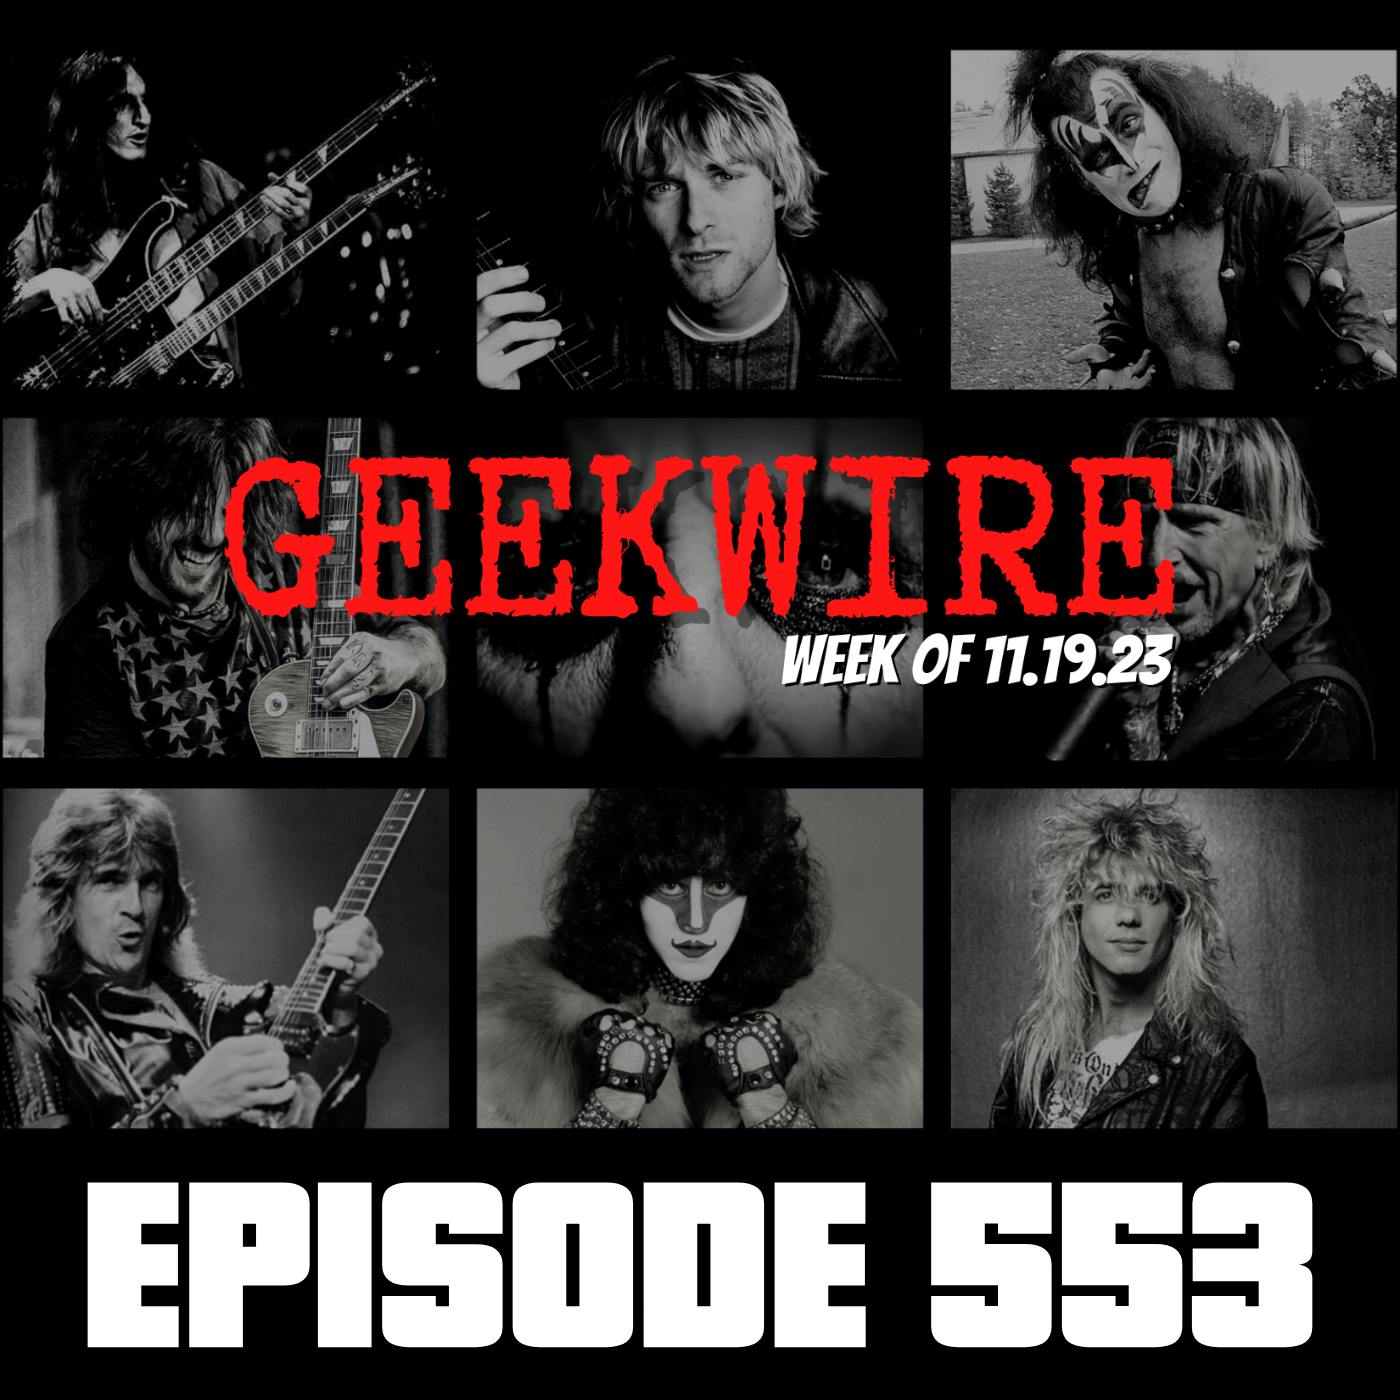 Geekwire Week of 11.19.23 - Ep553